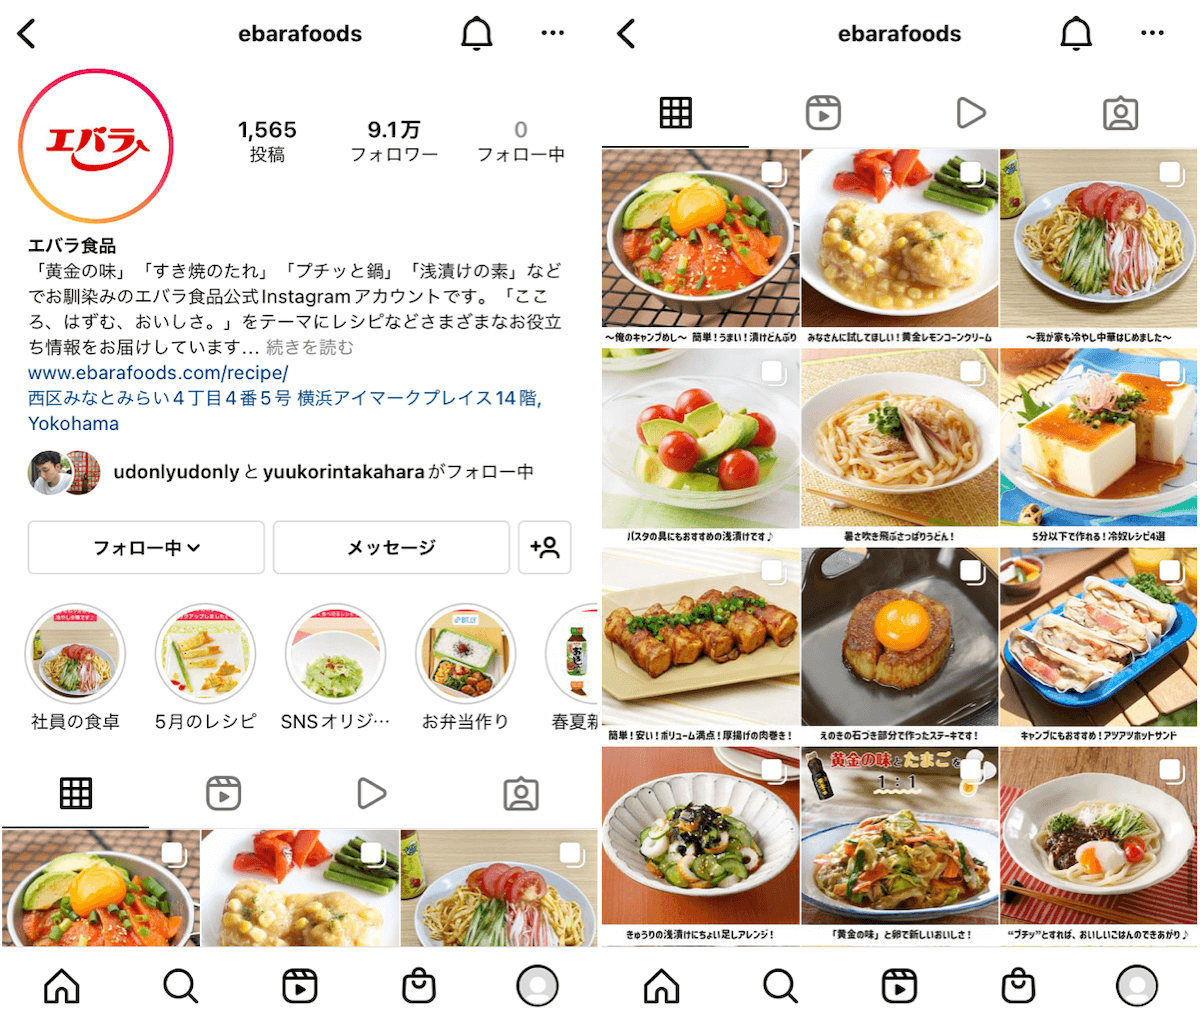 instagram-foods-official-ebarafoods